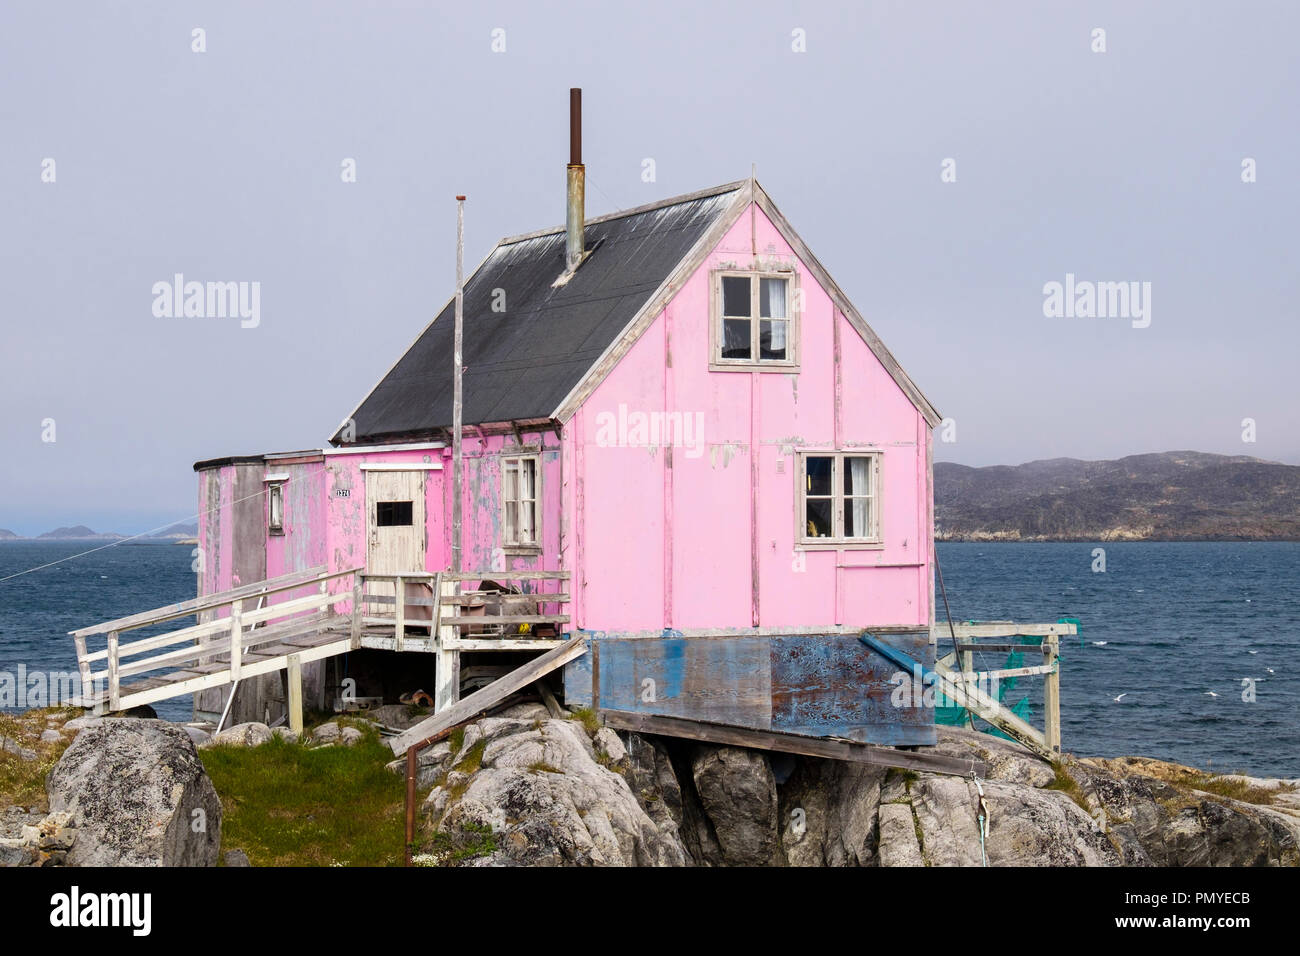 Inuit tipica casa in legno dipinto di rosa con reti da pesca al di fuori di essiccazione. Itilleq, Qeqqata, Groenlandia. Su una piccola isola a 2 km a nord del circolo polare artico Foto Stock